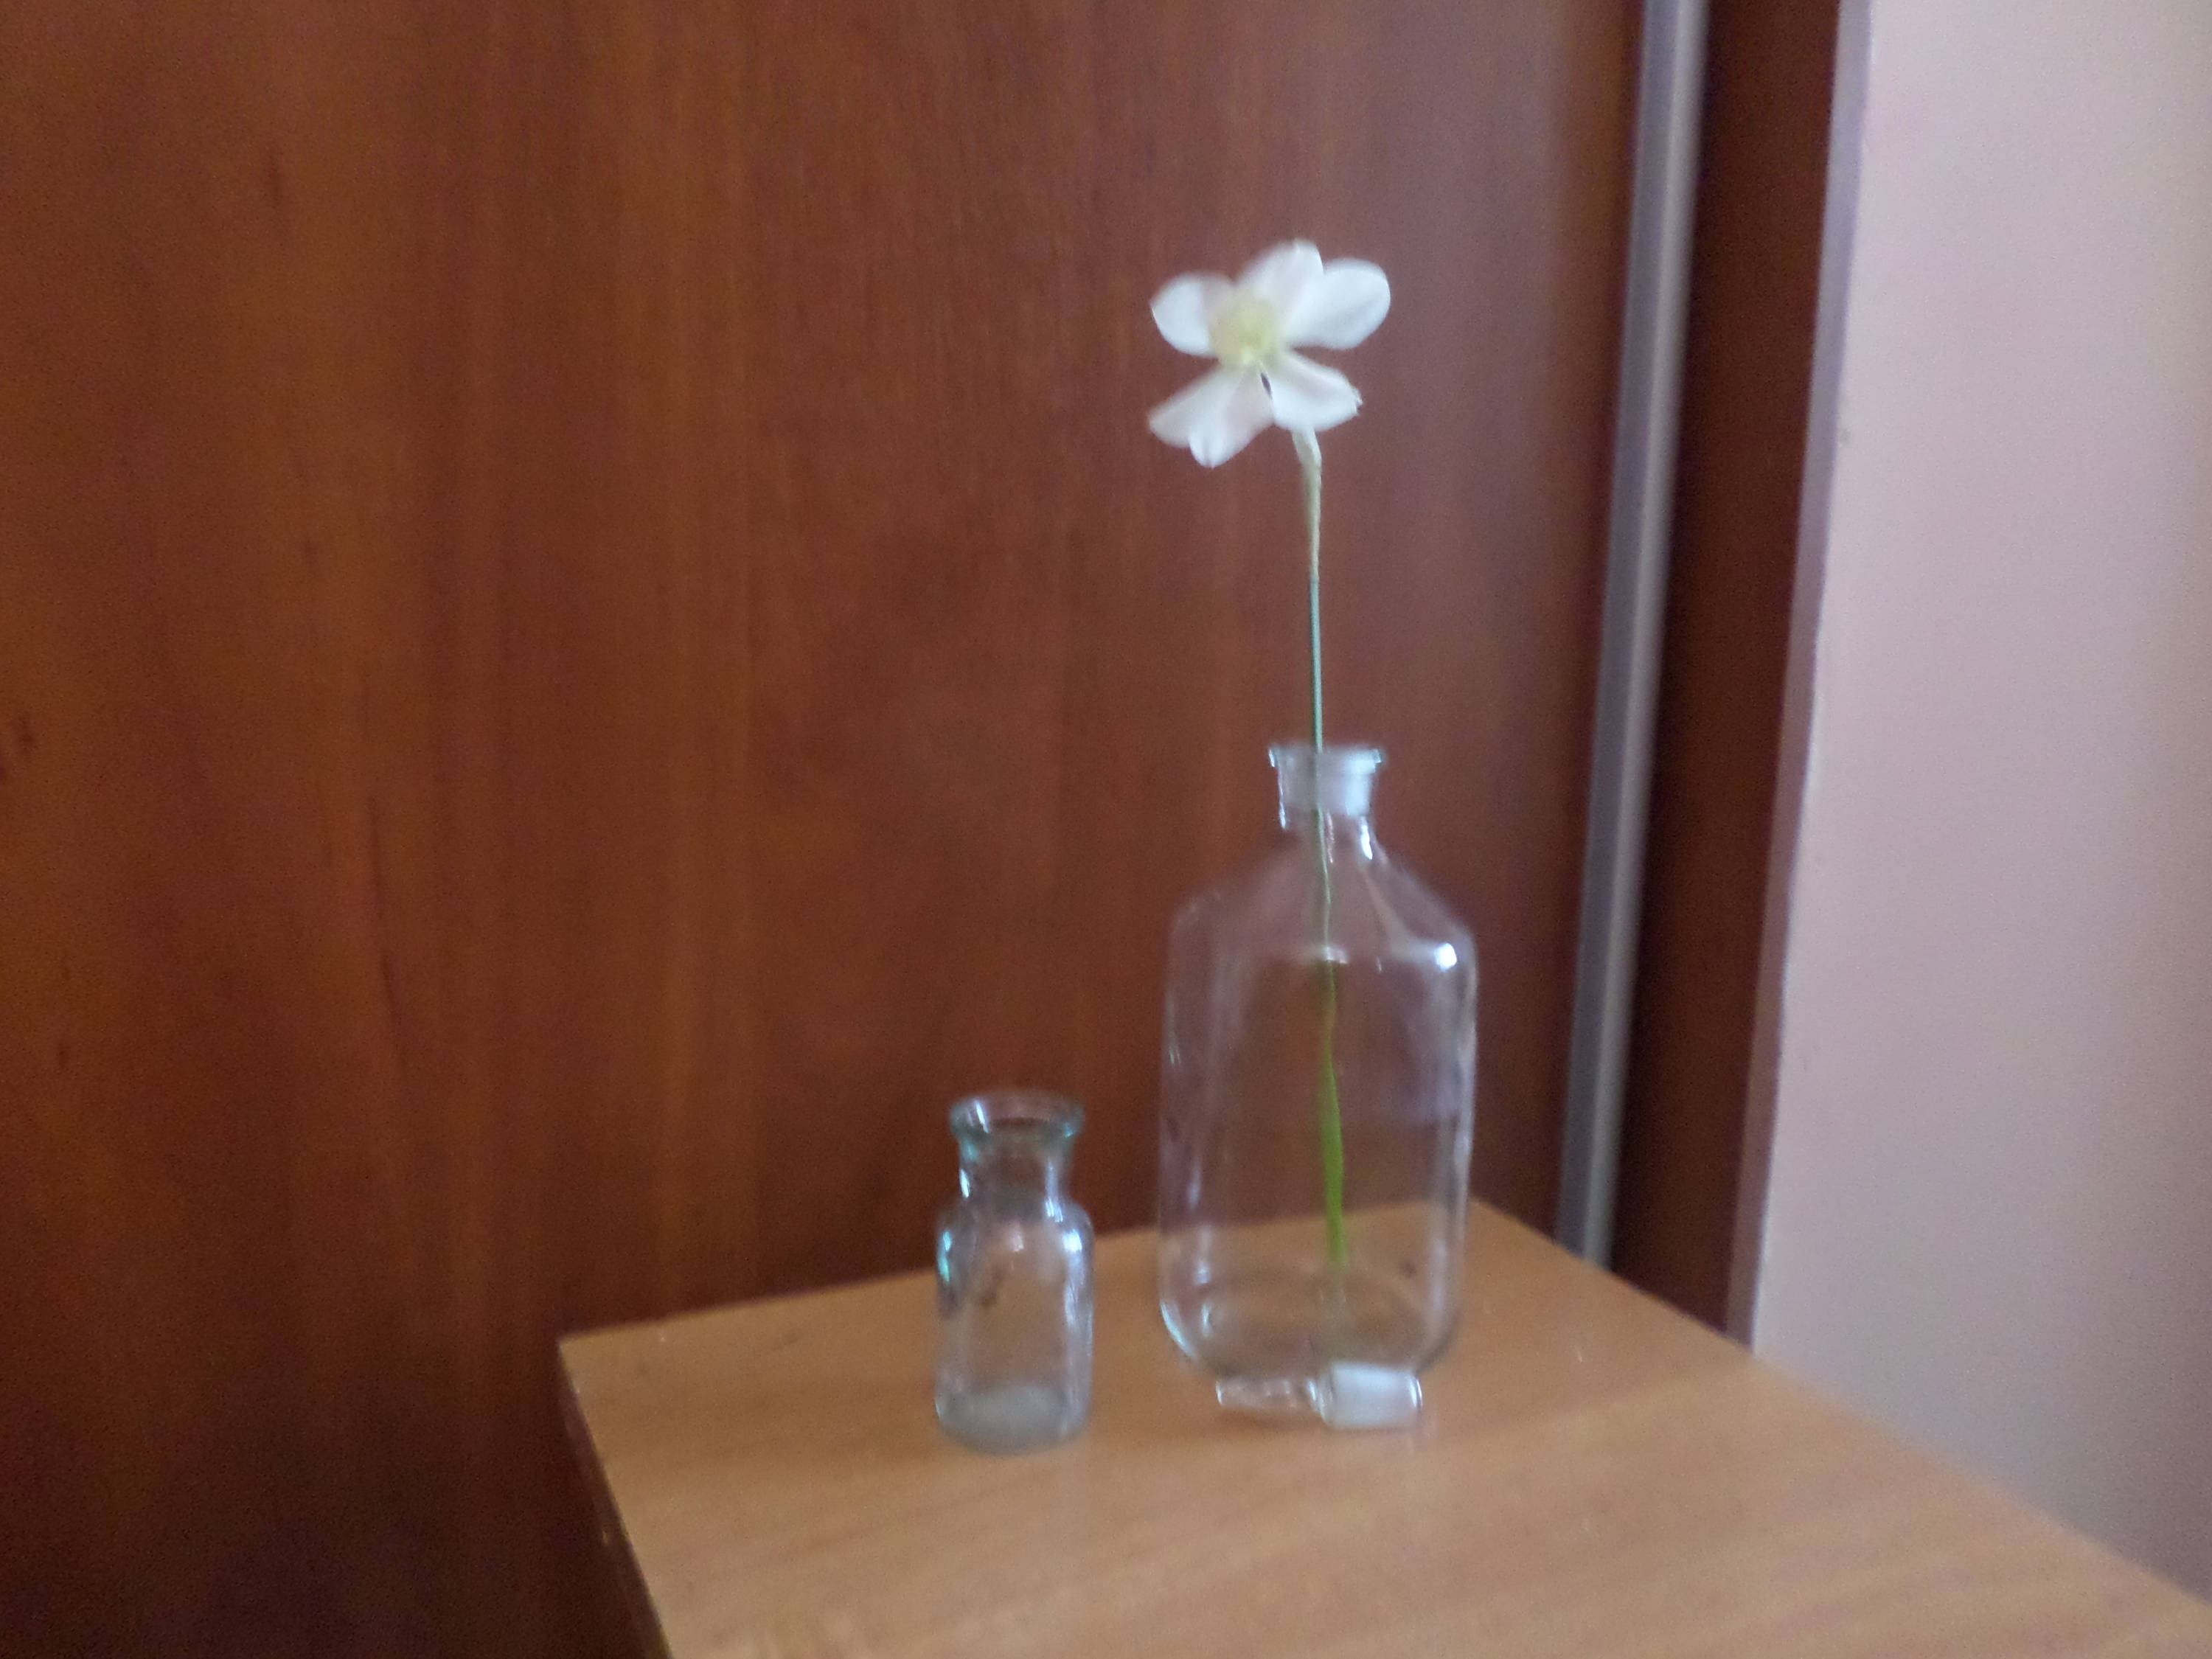 27 Lovable Clear Glass Bottle Vase 2024 free download clear glass bottle vase of laboratory glass bottle medicine bottles vintage laboratory etsy intended for dc29fc294c28ezoom